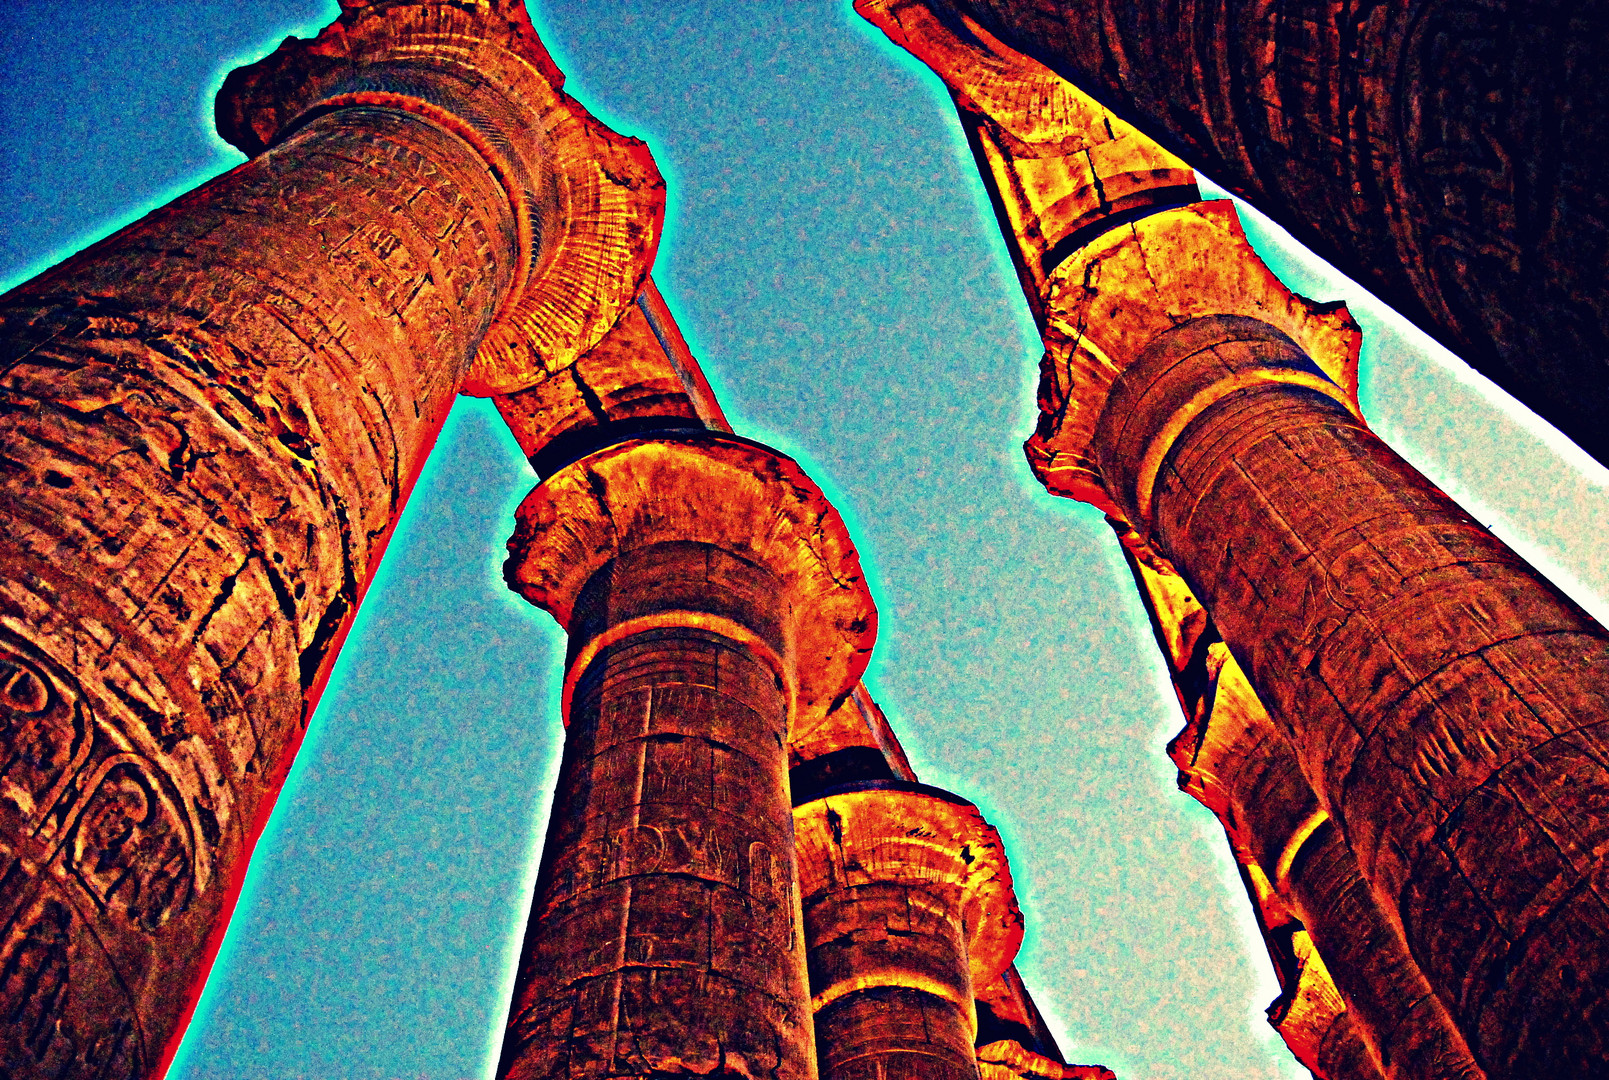 Tut Anch Amun's Beitrag zum Tempel in Luxor